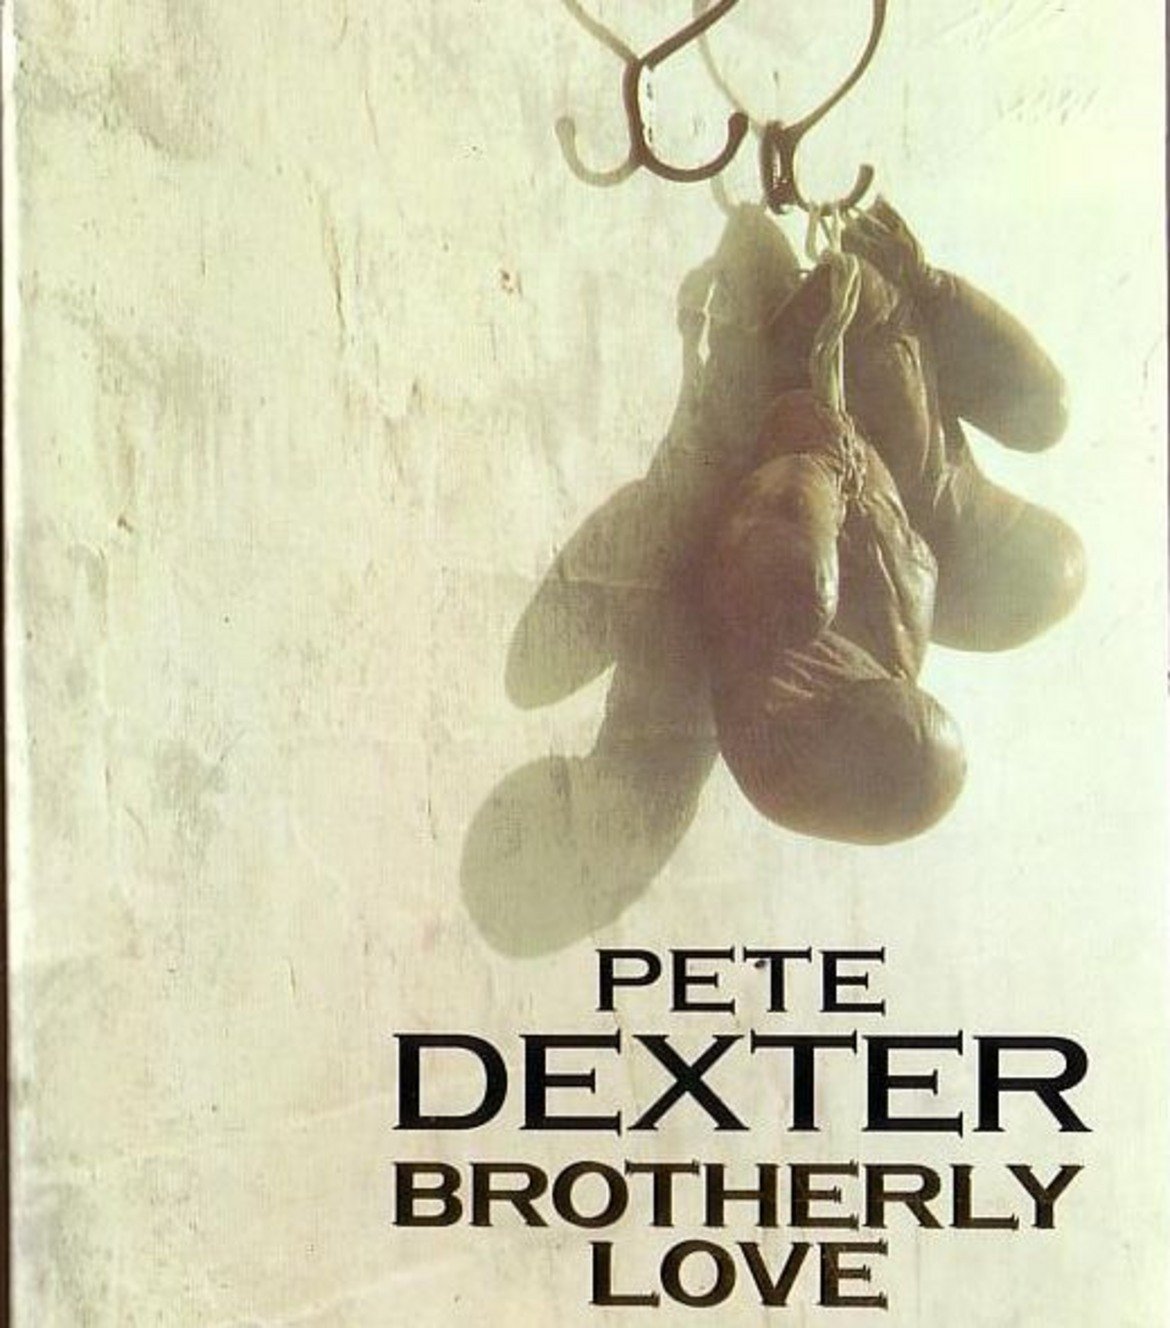 10. The Sound of Philadelphia 

Една американска крими история, базирана на романа "Brotherly Love" на Пийт Декстър. Историята проследява събитията след смъртта на младо момиче, убито от невнимателен шофьор, и семейството на загиналата, което търси отмъщение. Две десетилетия след инцидента братът на момичето все още не може да преживее случилото се, а в същото време неговият братовчед започва издигането си в йерархията на престъпния бизнес на семейството.
